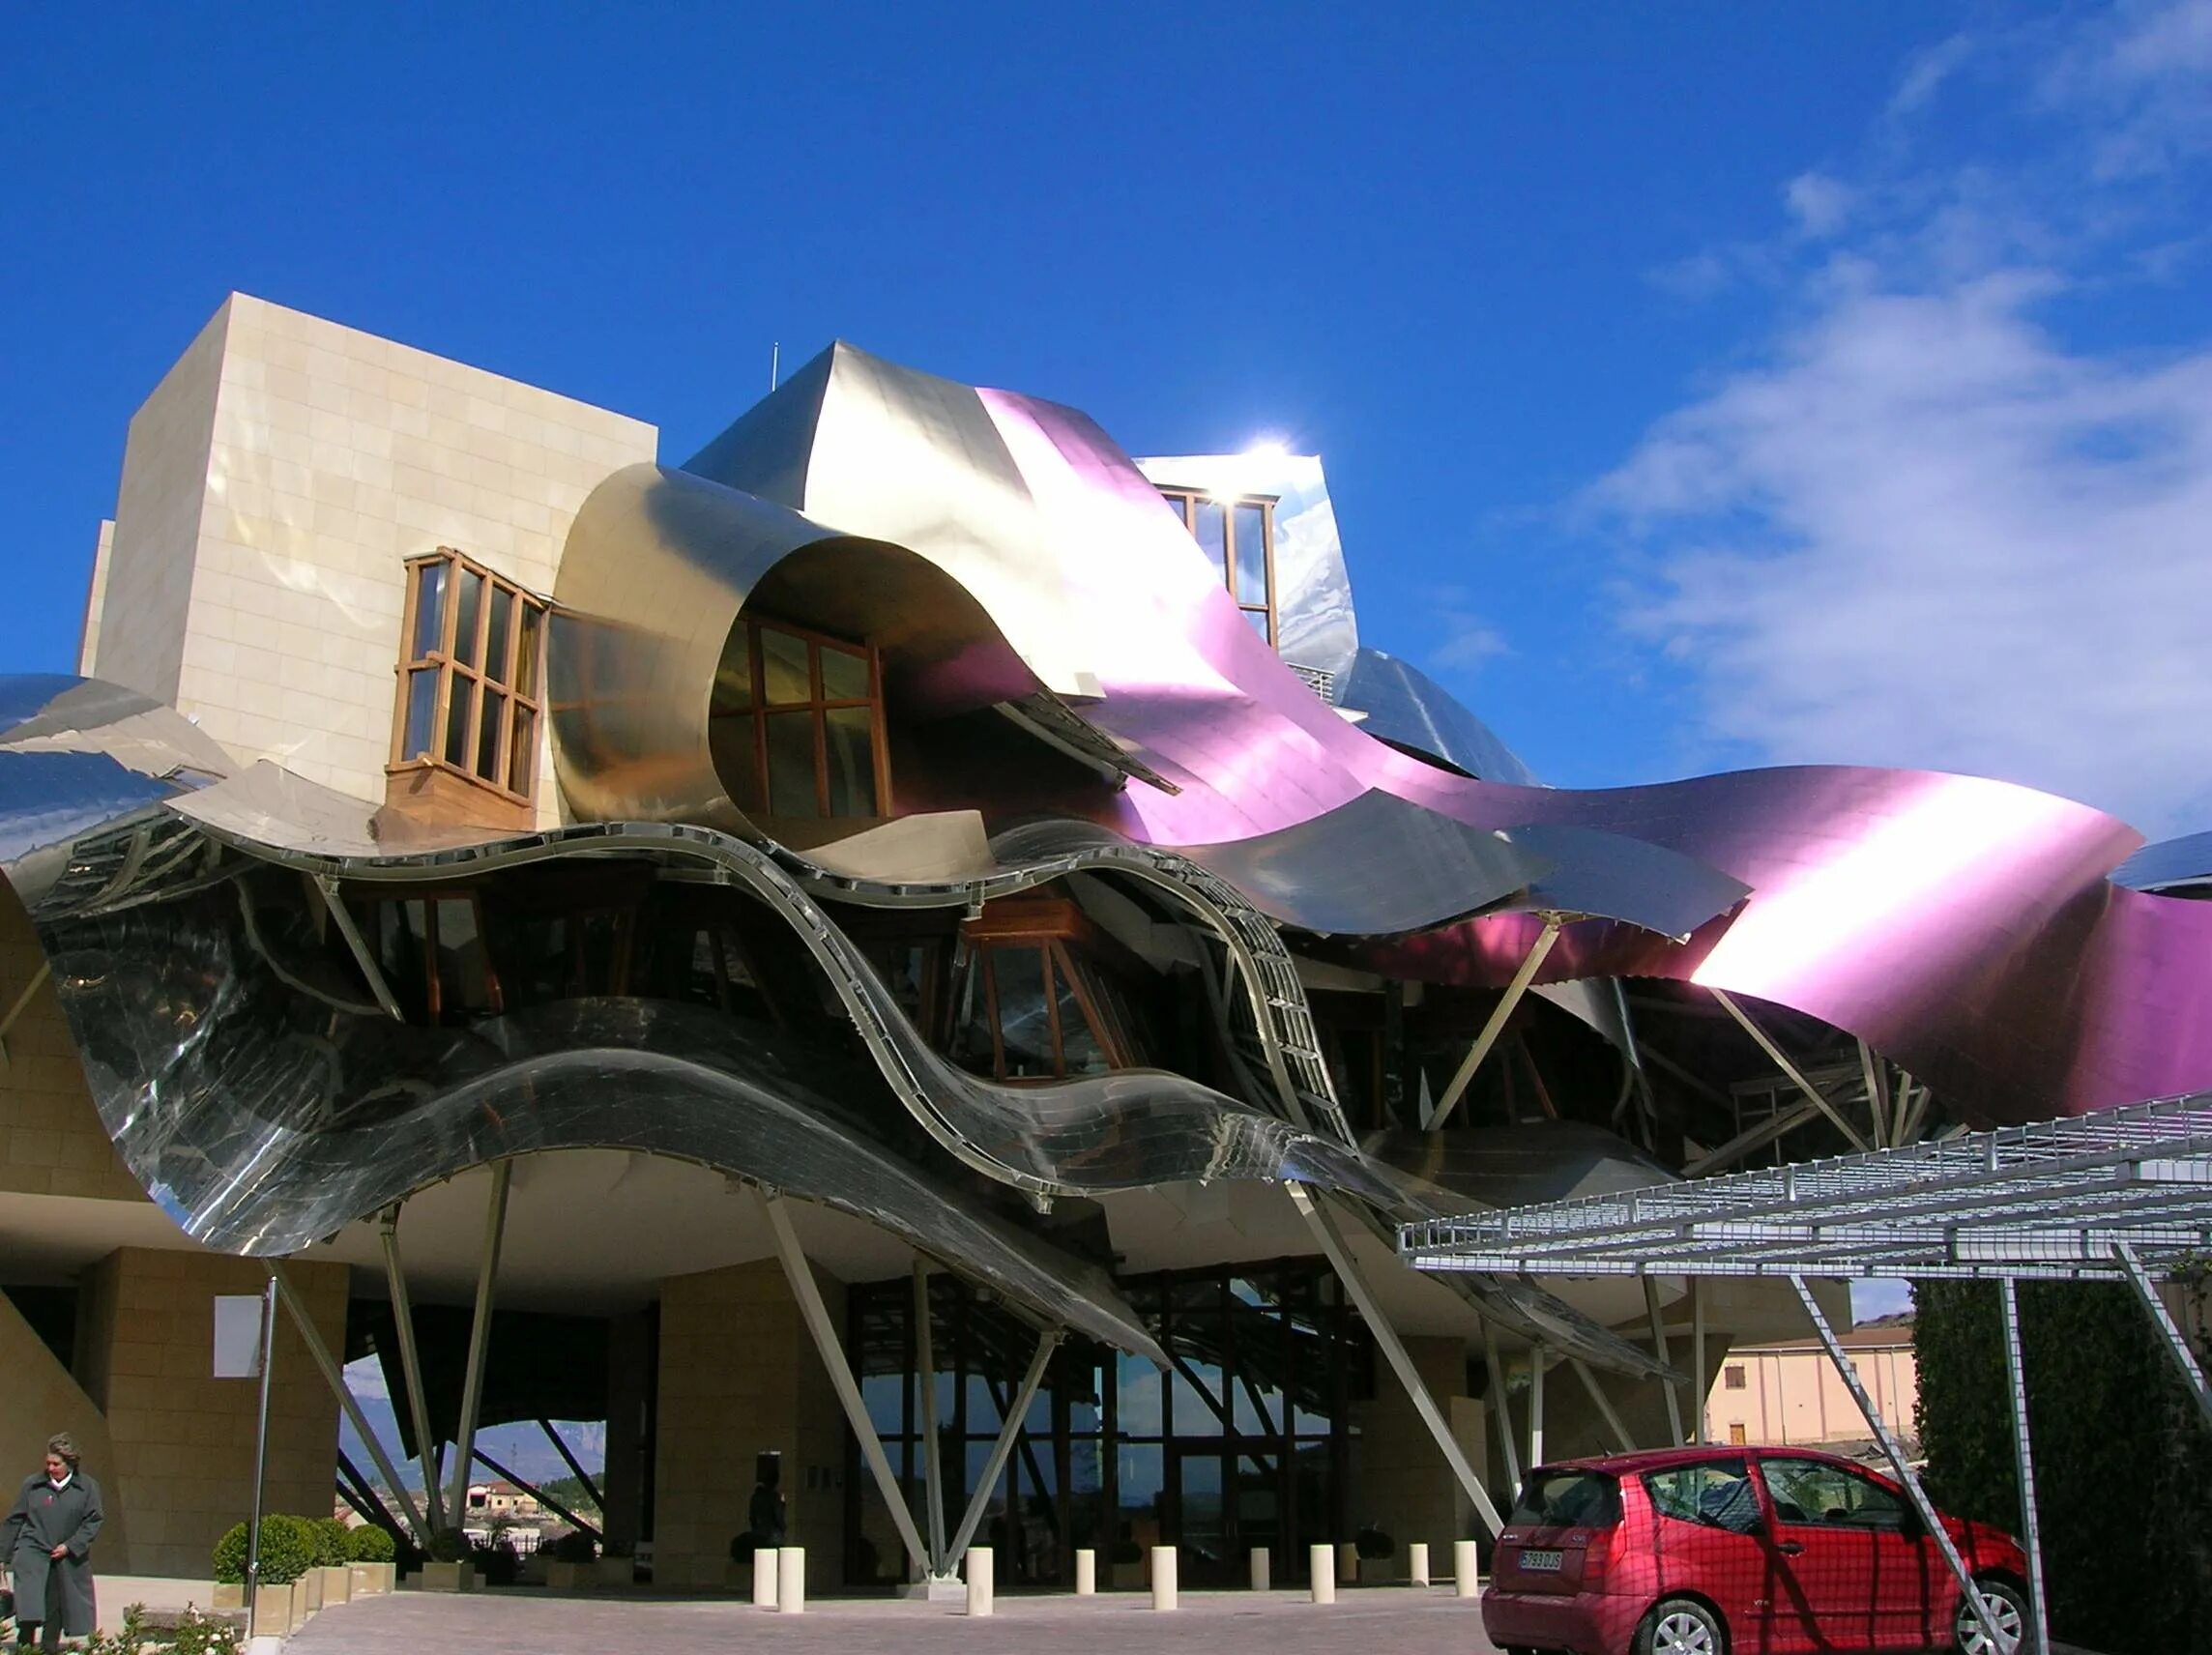 Отель Маркиз-де-Рискаль (marqués de Riscal), Испания. Фрэнк Гери (Frank Gehry) - отель Riscal. Фрэнк Гери винодельня. Отель marques de Riscal - Эльсьего, Испания.